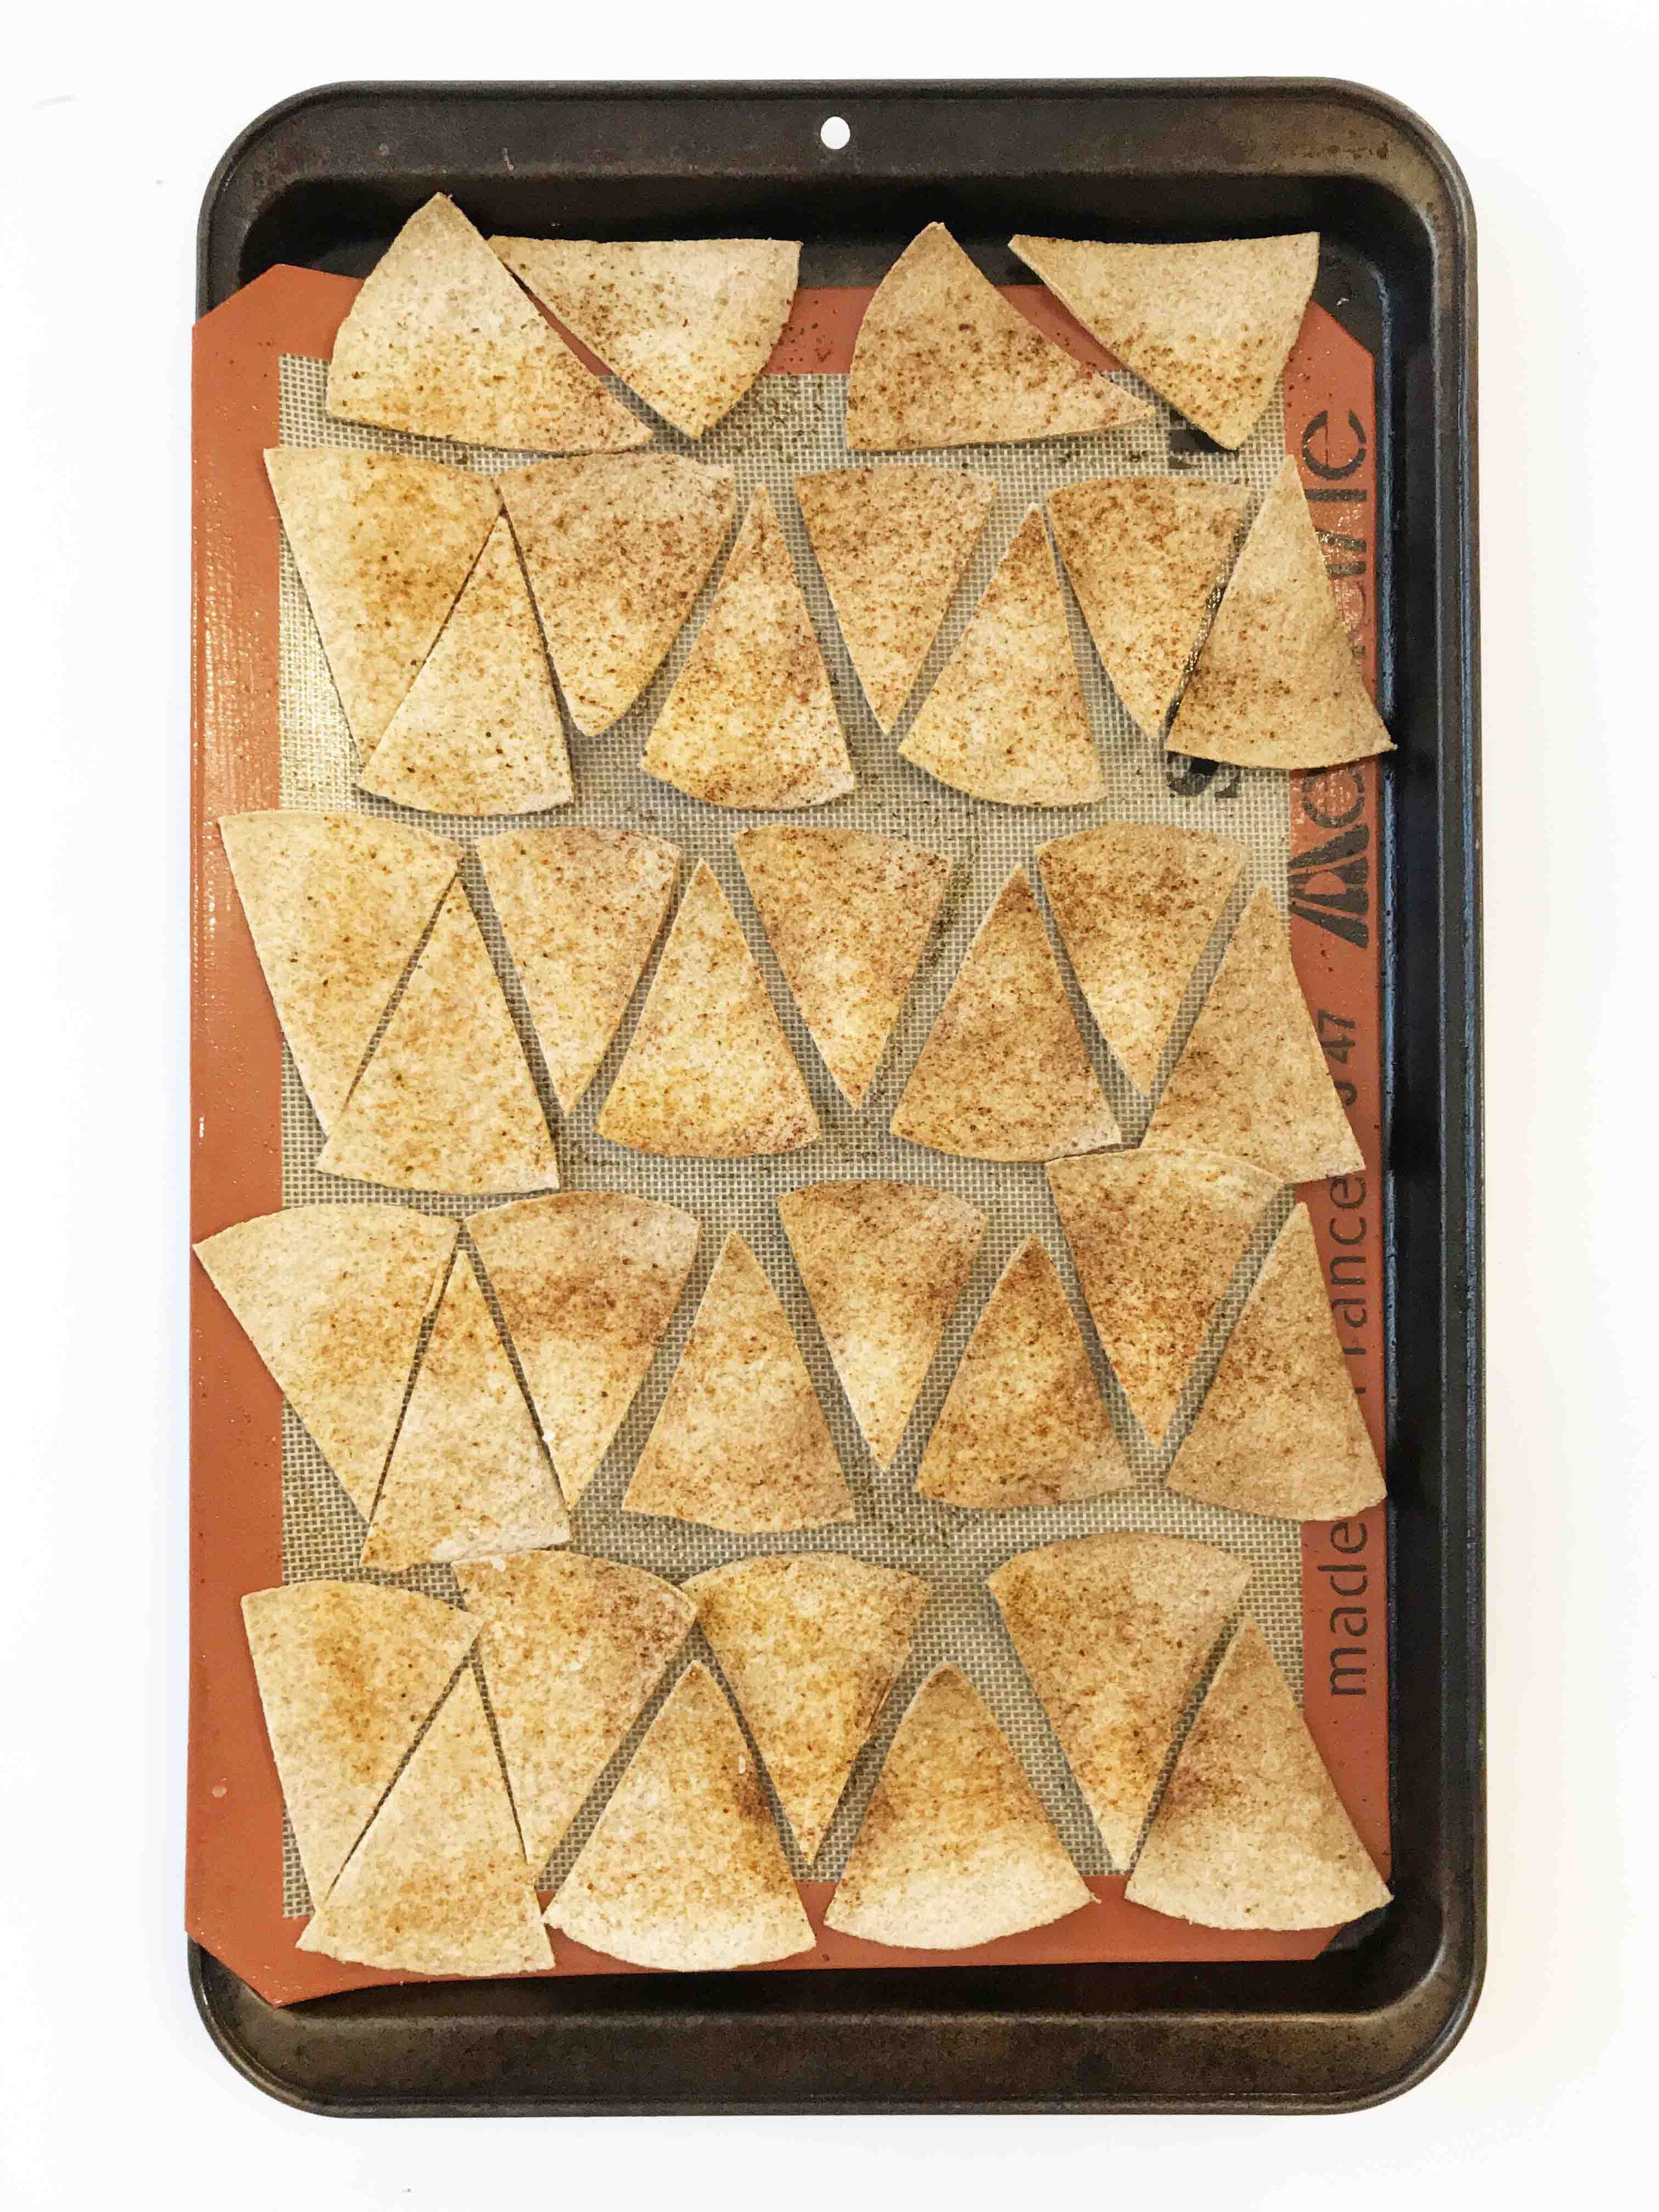 baked-tortilla-chips4.jpg